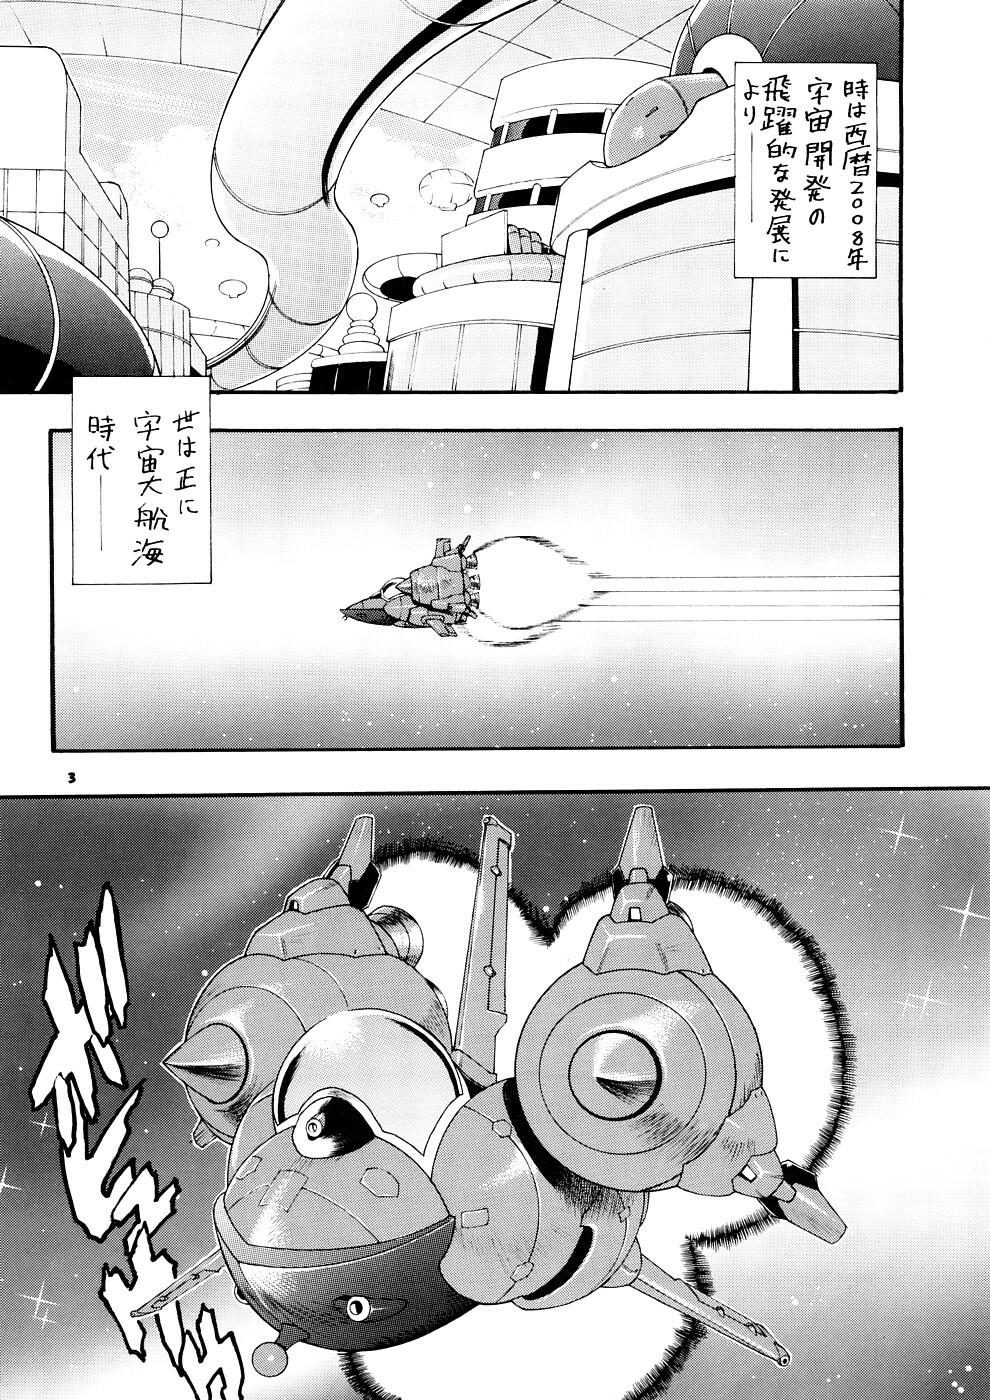 [Sangenshokudou (Chikasato Michiru)] Supēsu no sutaruji a 1 | Space Nostalgia 1 page 2 full